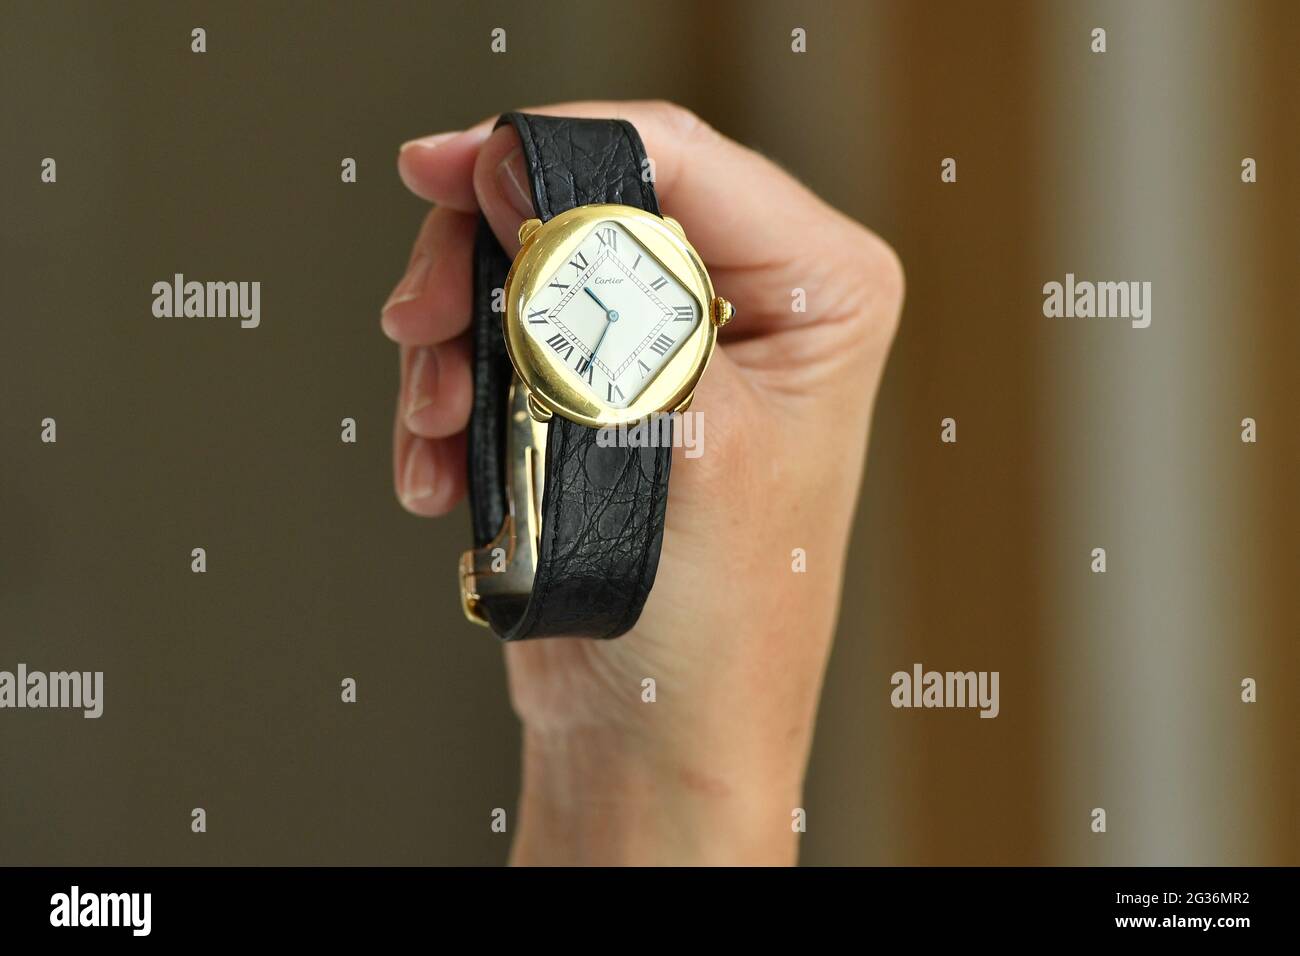 Un membro dello staff detiene un orologio d'oro 1975 Pebble 'Turtle' Cartier 18k, con un valore di vendita stimato di £150,000-£200,000, durante un'anteprima del Bonhams fine Watches sale, a Bonhams a Londra. Data immagine: Lunedì 14 giugno 2021. Foto Stock